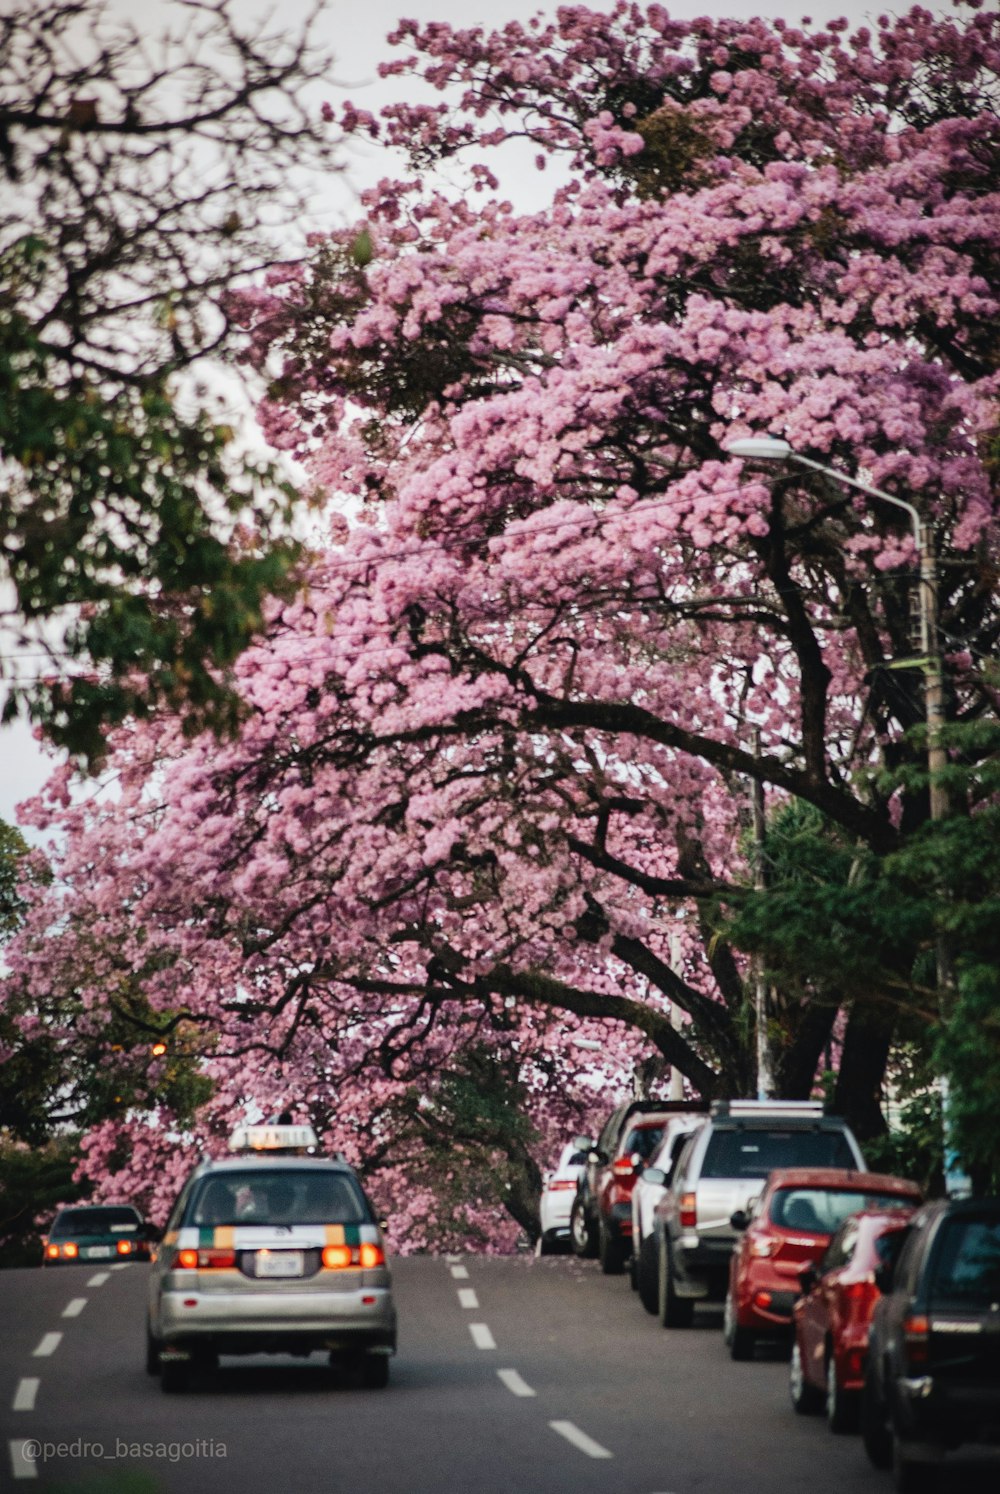 Coches aparcados bajo el cerezo rosa en flor durante el día